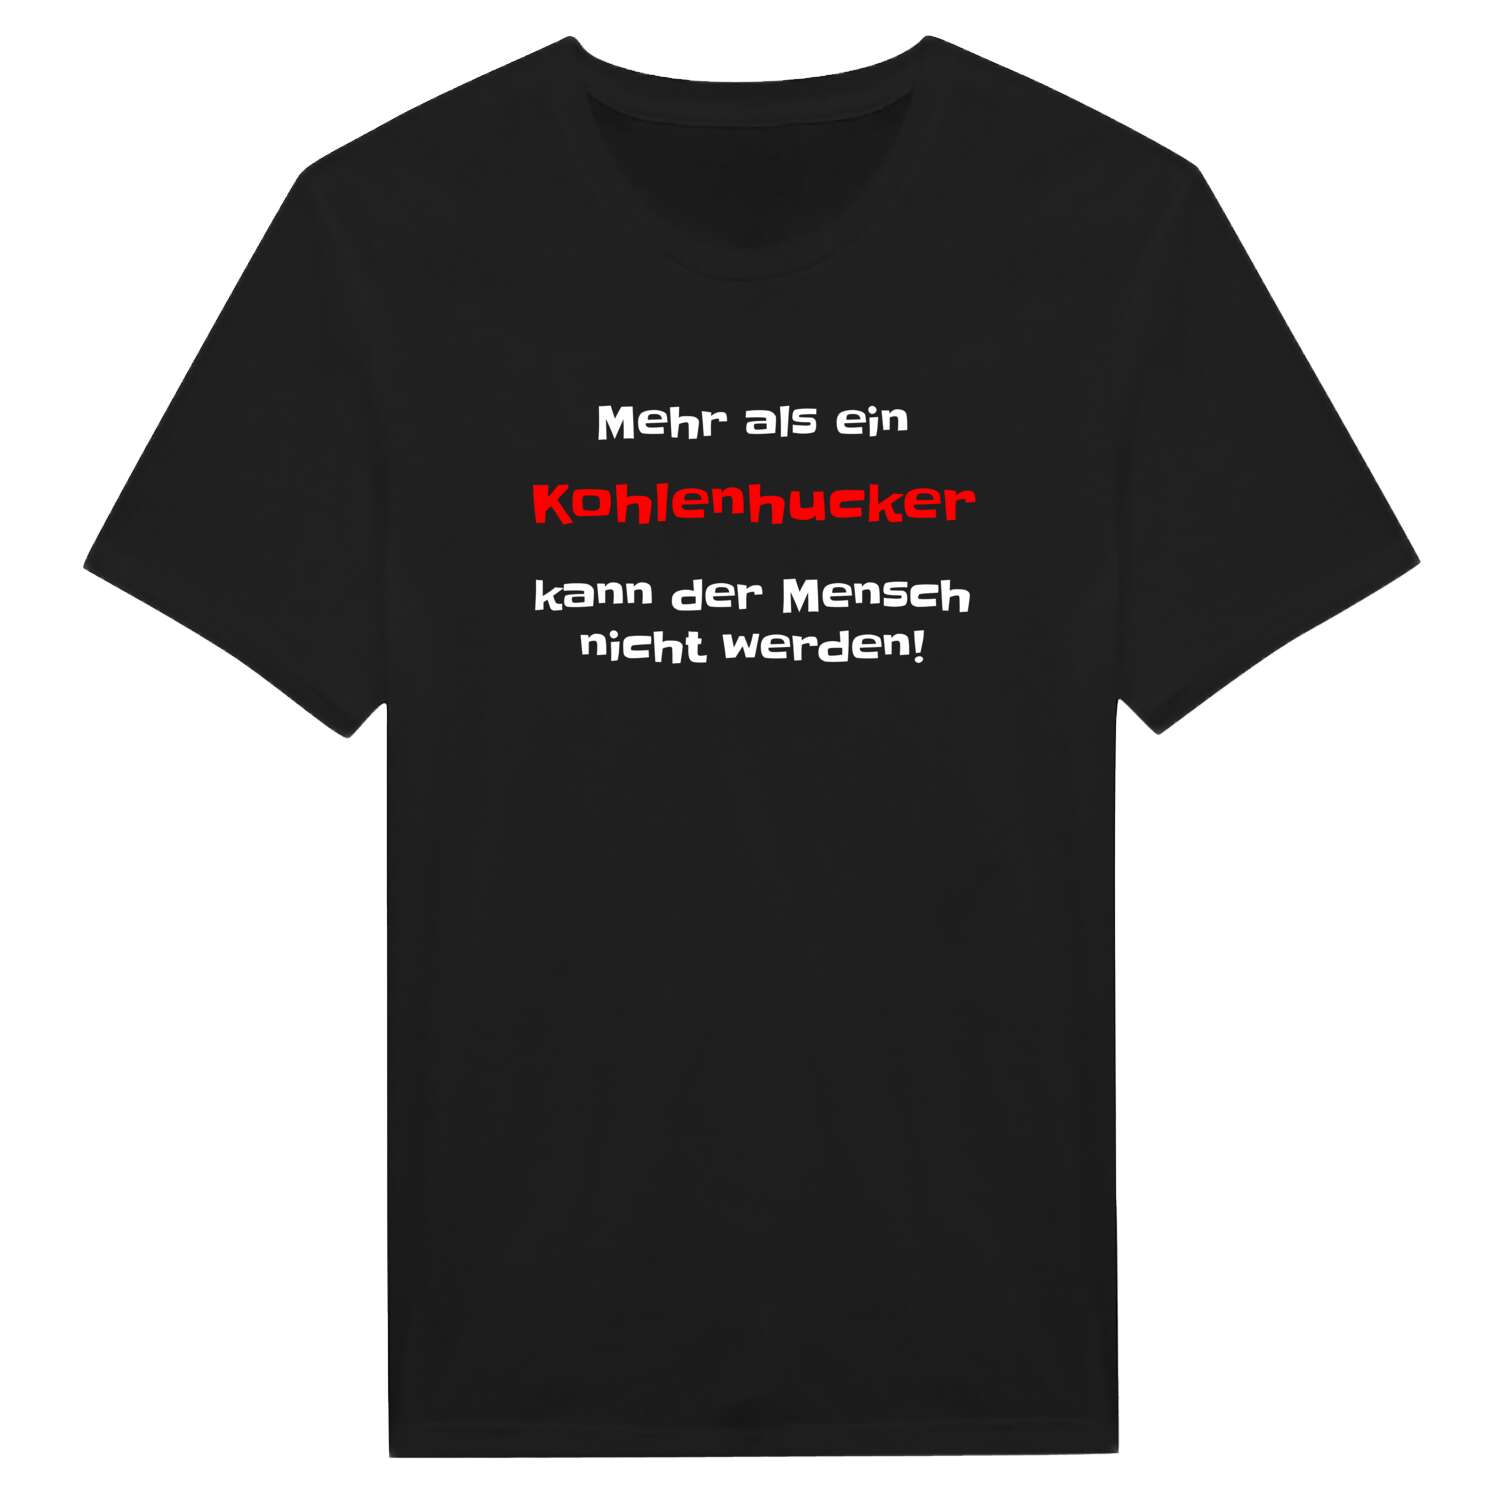 Kohlenhuck T-Shirt »Mehr als ein«